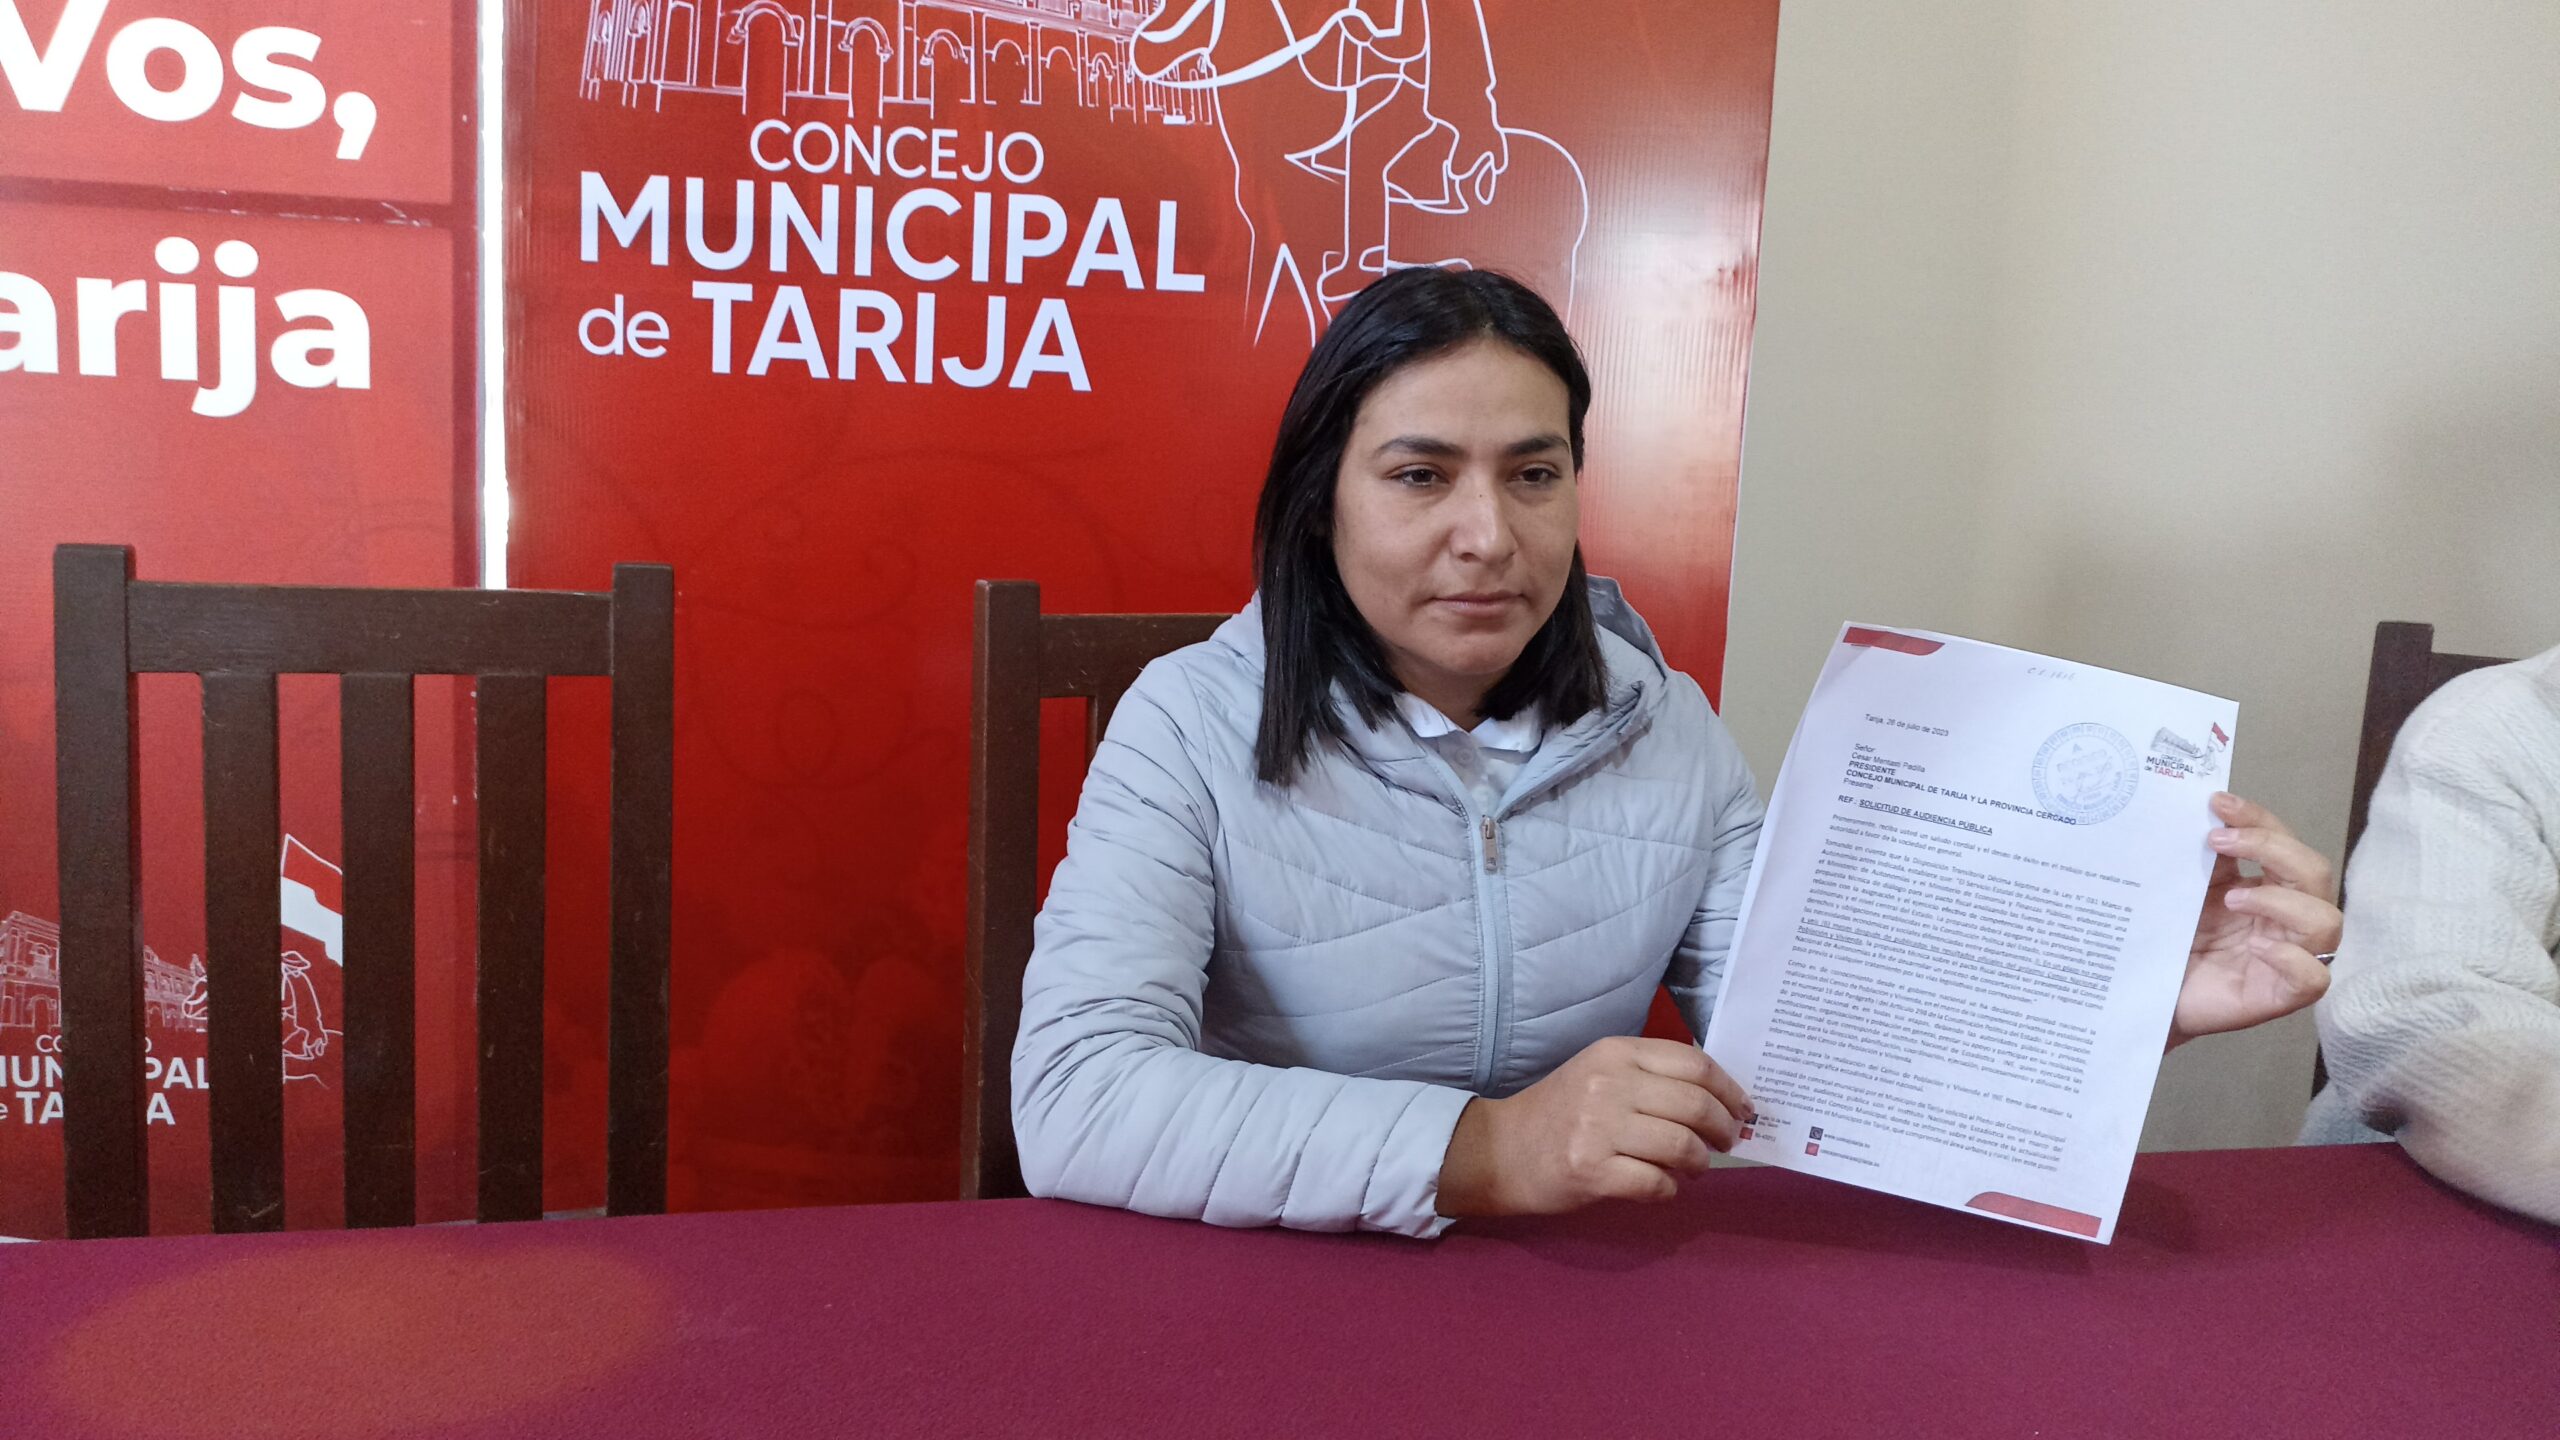 Concejal de Tarija presenta proyecto para construir puente entre distritos 11 y 12